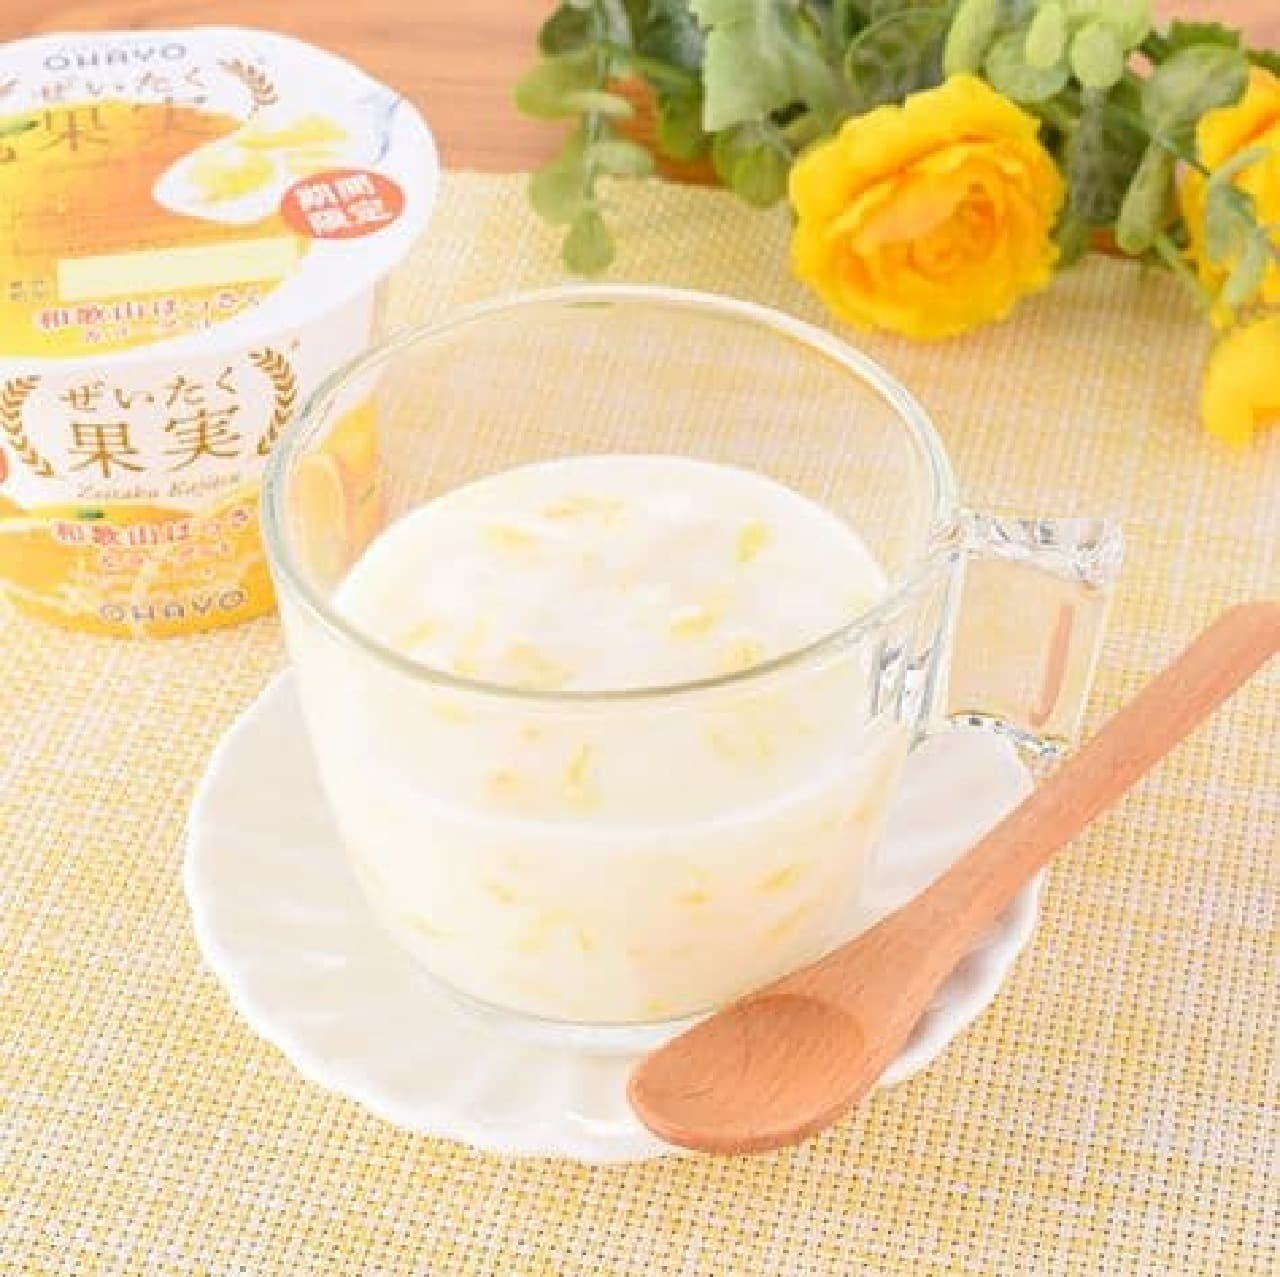 FamilyMart "Luxury Fruit Wakayama Hassaku & Yogurt"